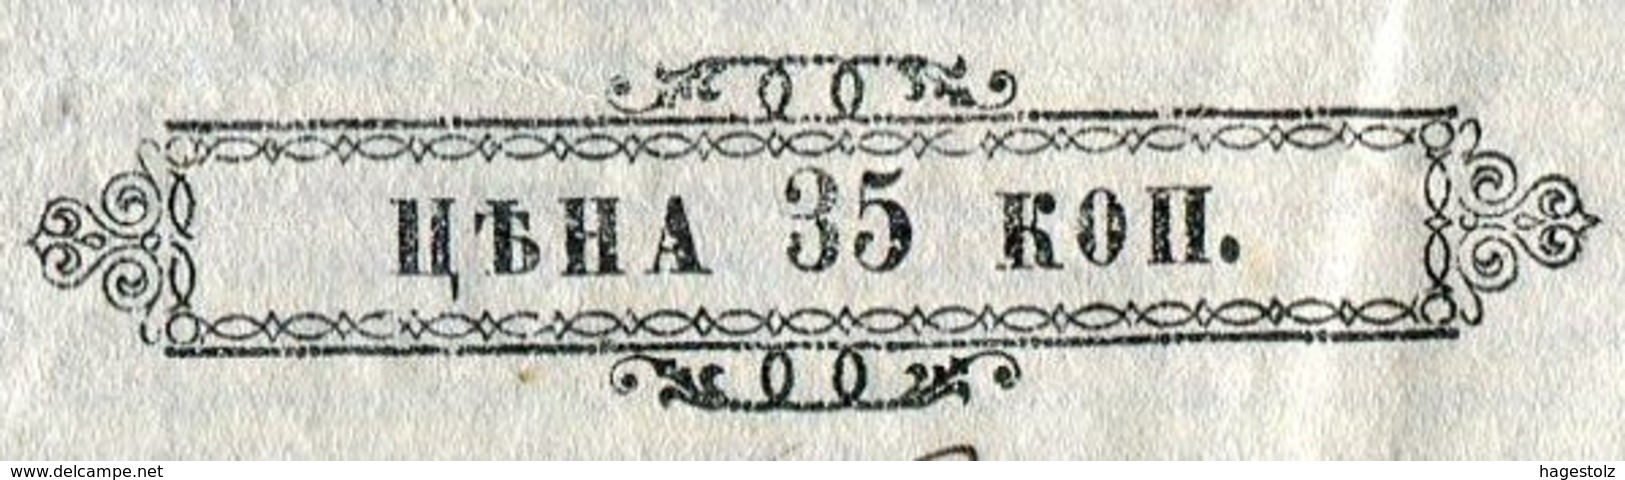 Russia Russland Russie 1875 Bill Of Exchange Wechsel 35 K. (300-400 Rub.) Revenue Stamped Paper Fiscal Tax Stempelpapier - Bills Of Exchange